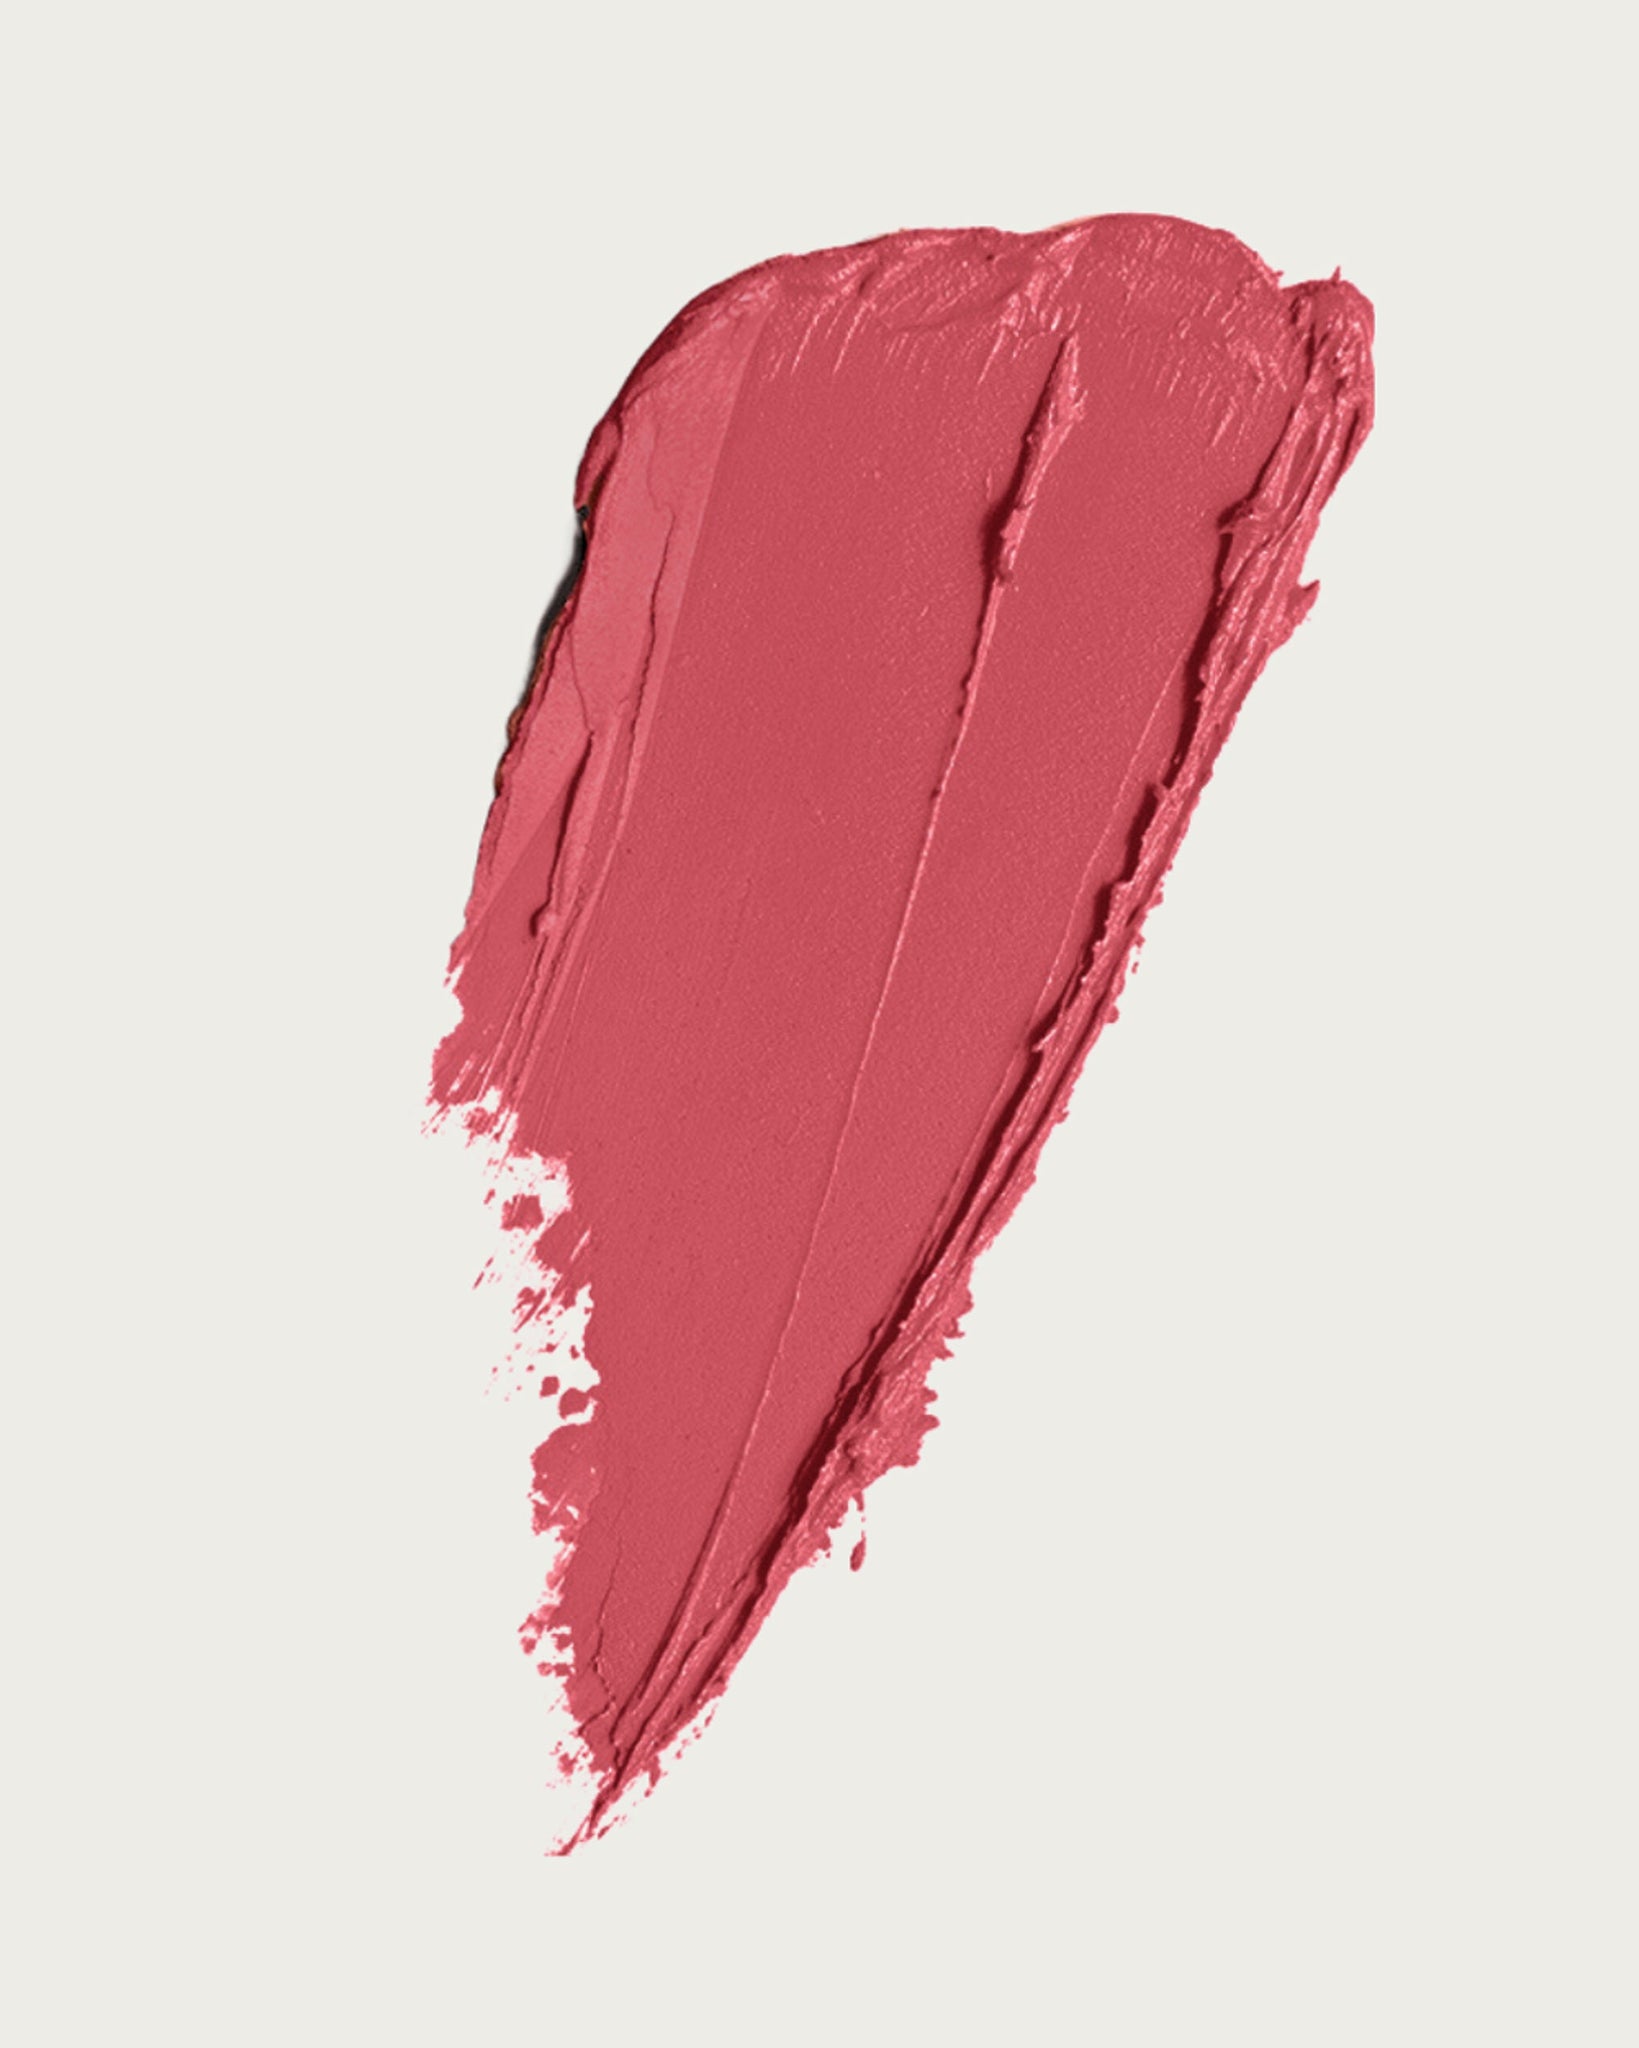 Le Rouge Lipstick